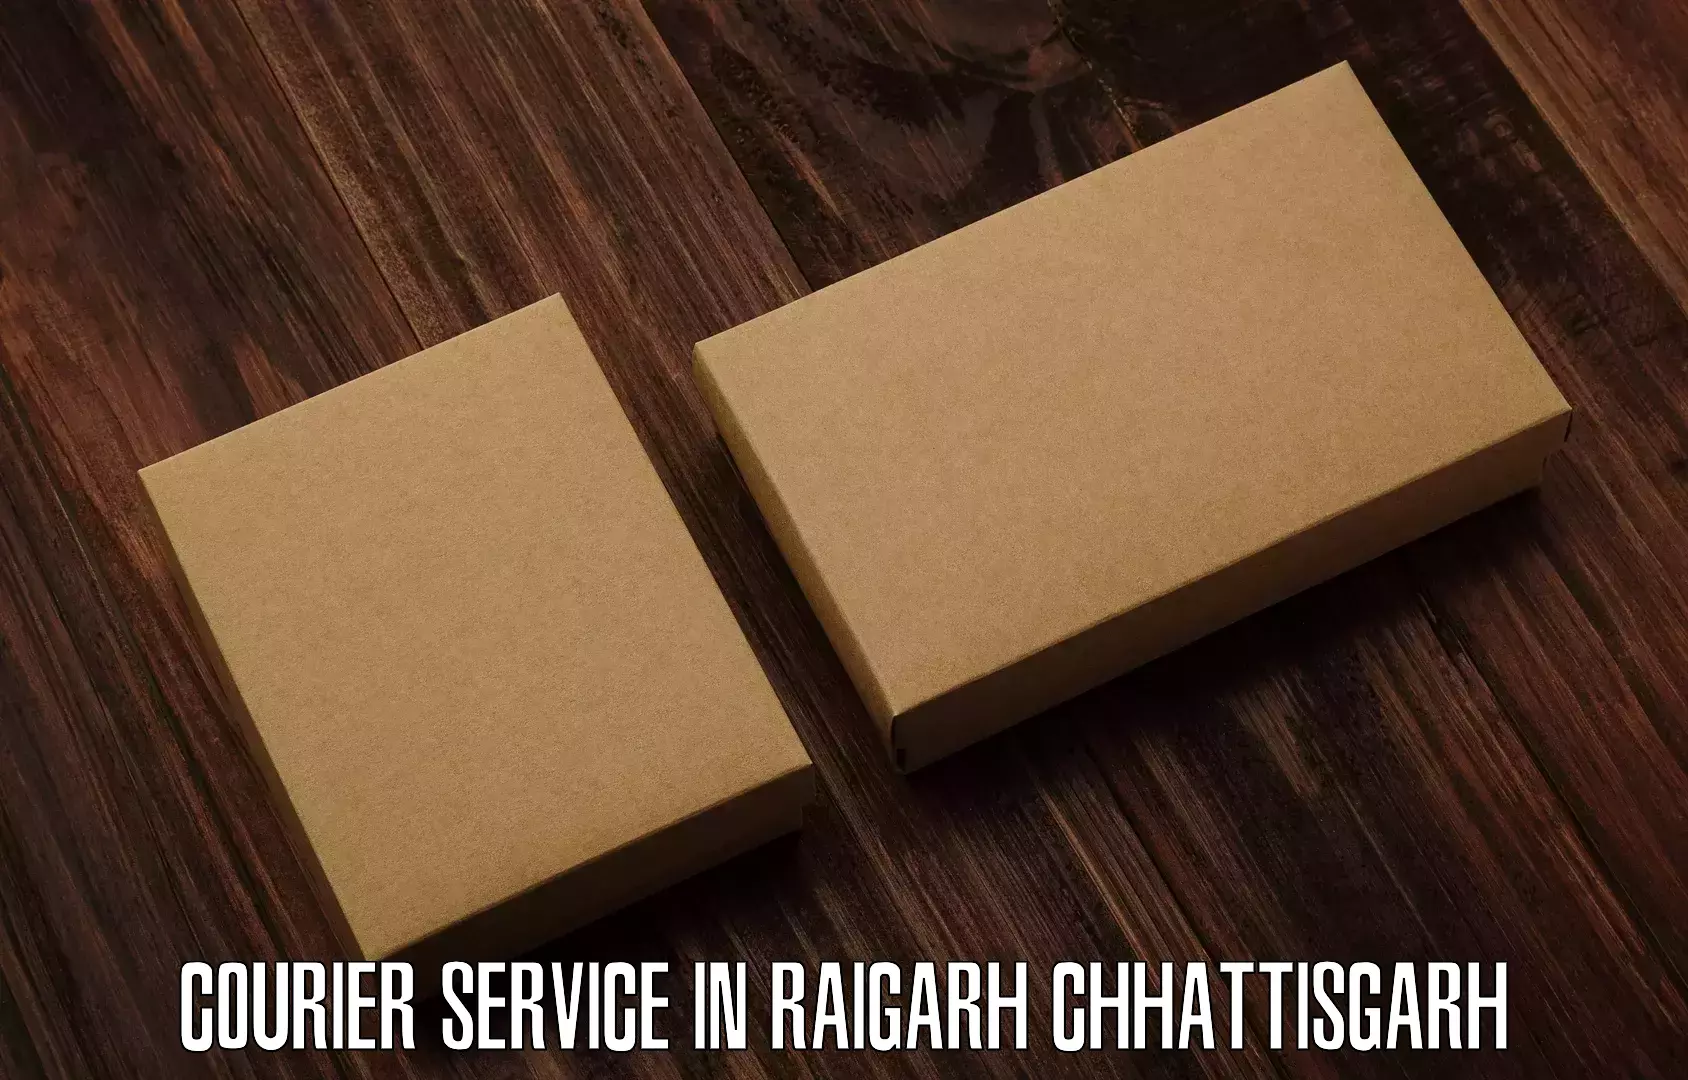 Door to door delivery in Raigarh Chhattisgarh